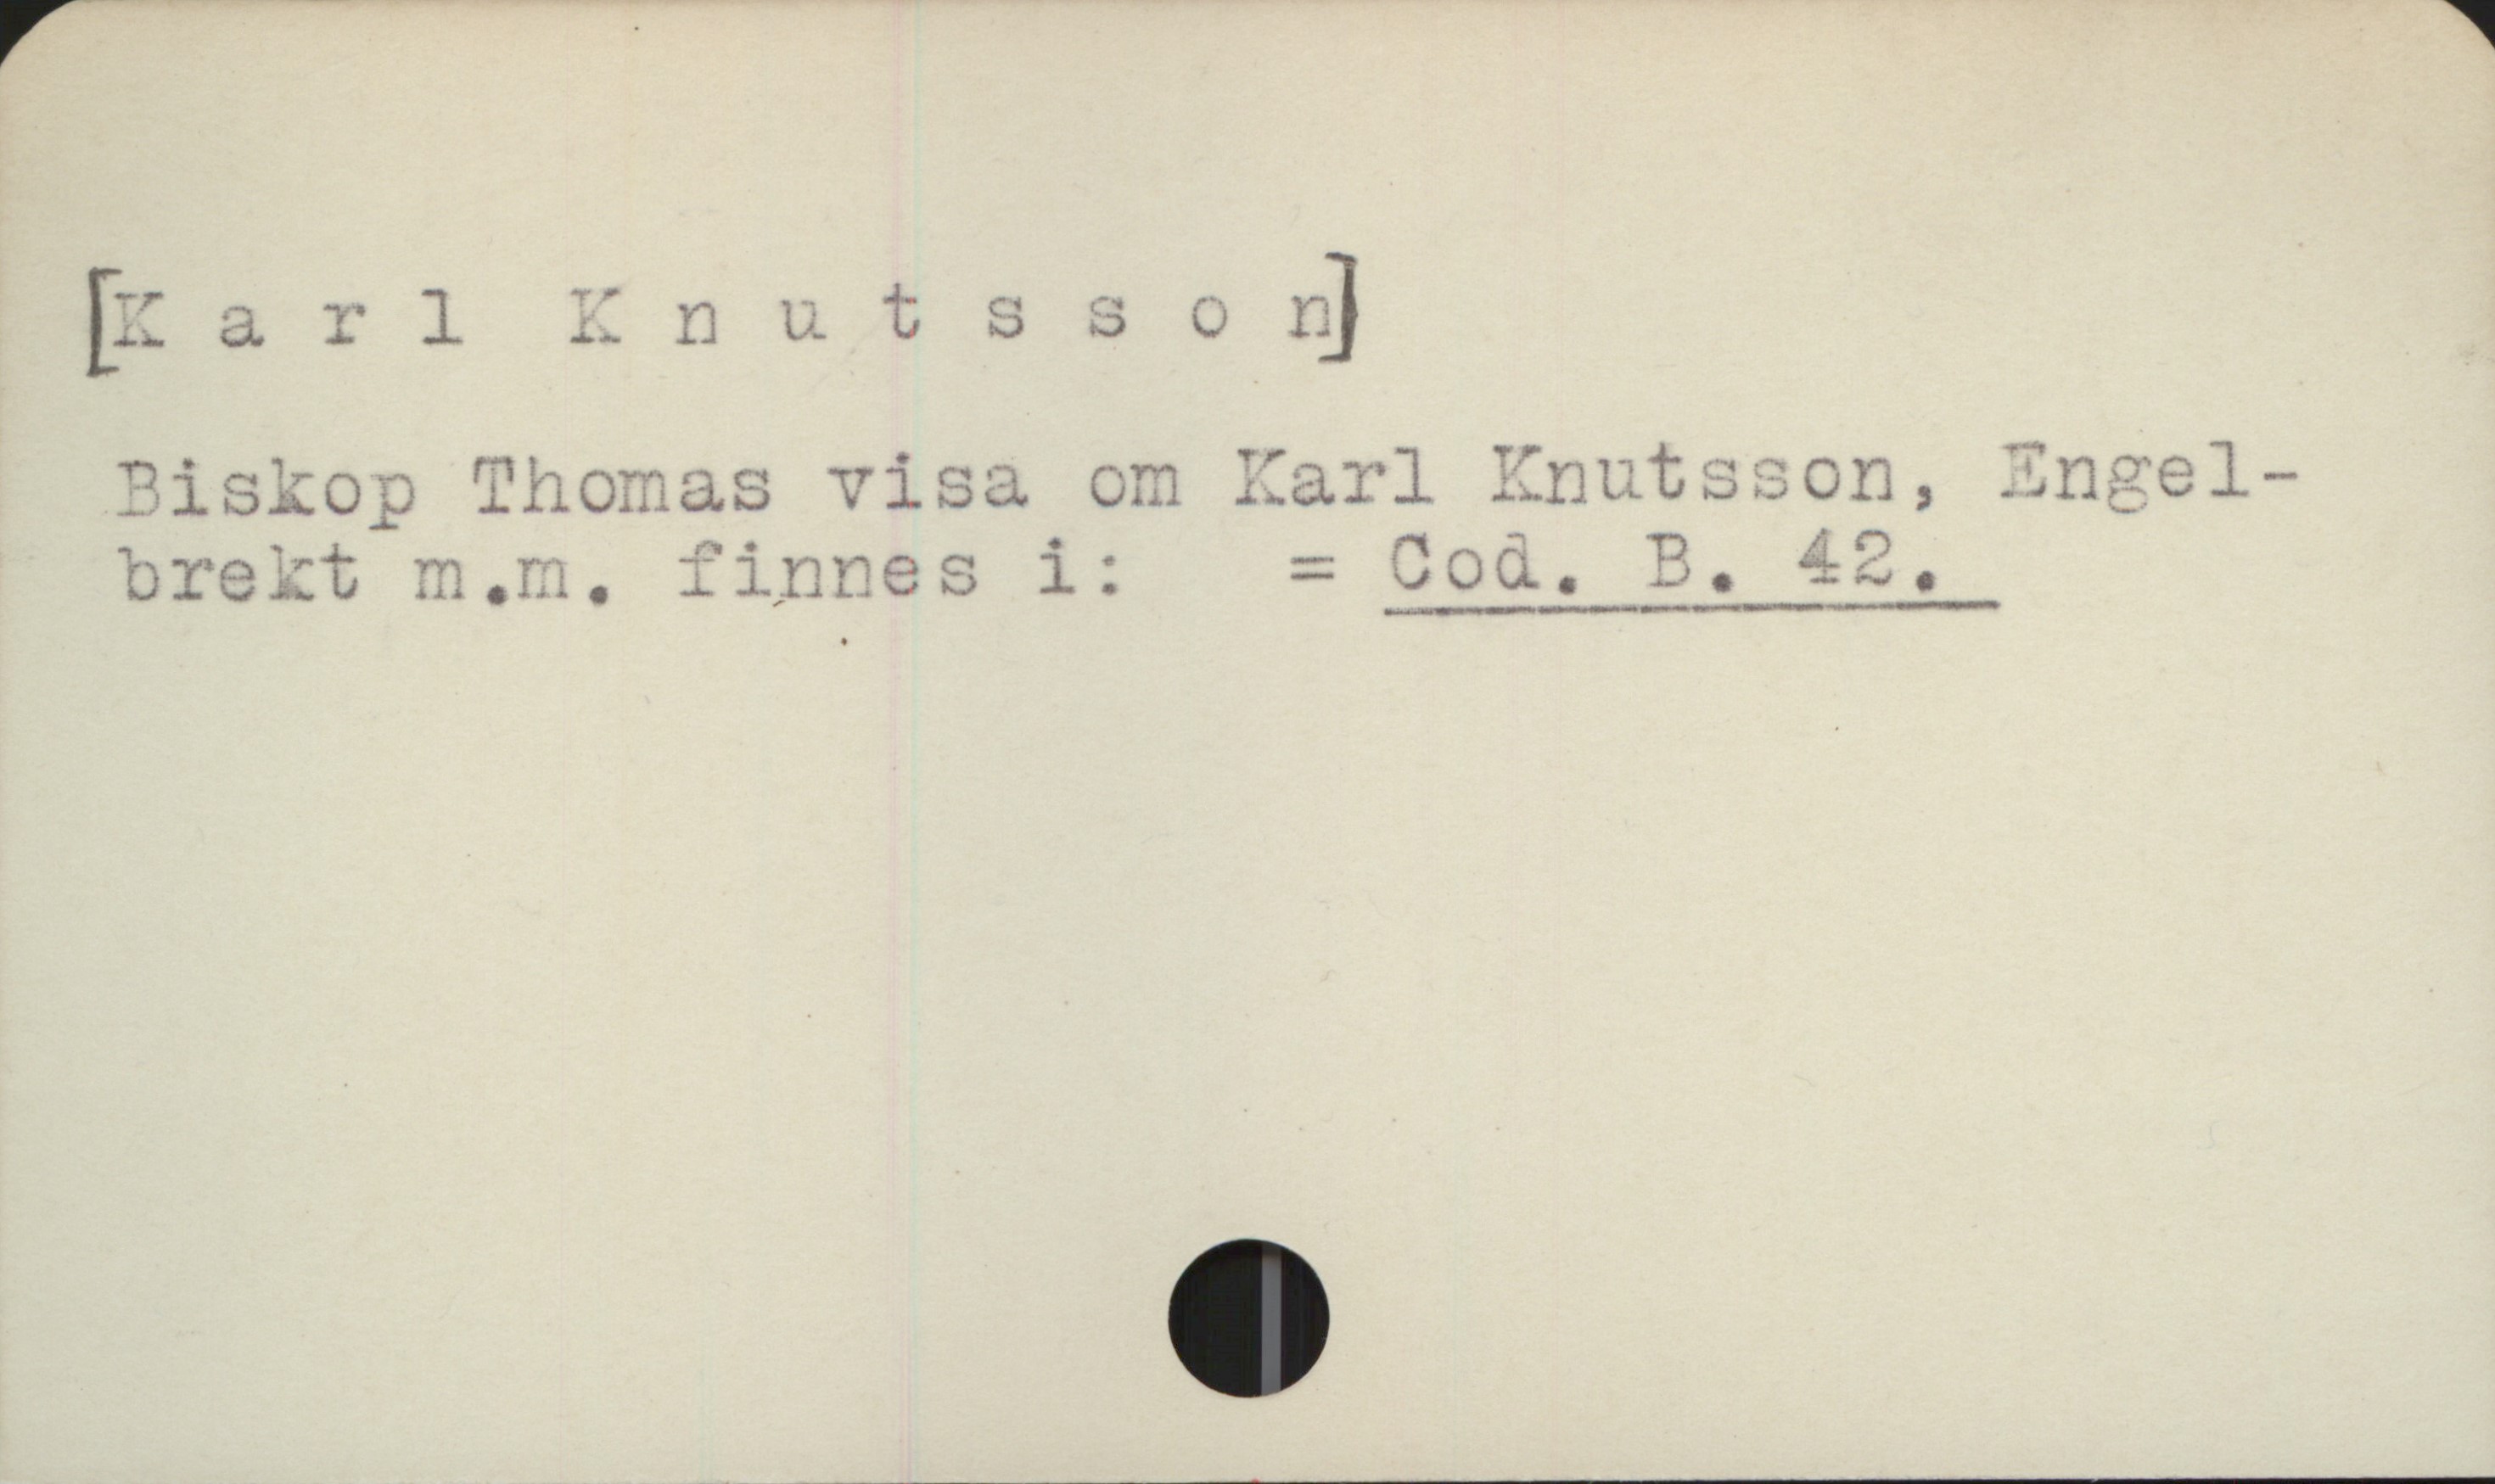  [Karlllnutsso &]
Piskop Thomas visa om Karl Enutsson,
brekt m.m. finnes i: = Cod. B. 42.

